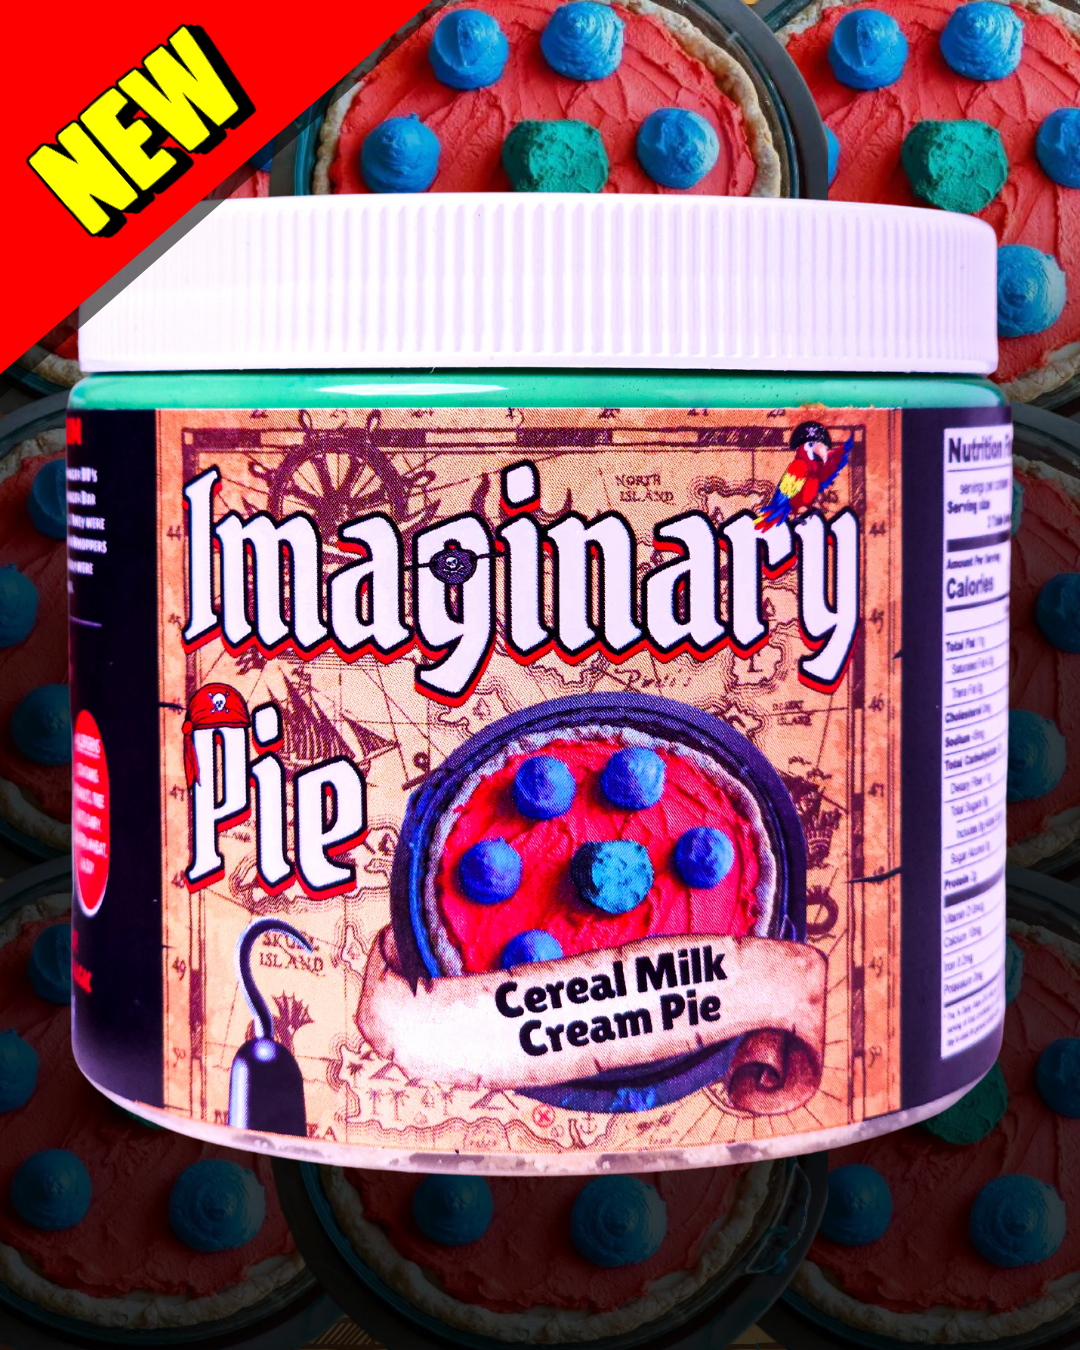 IMAGINARY PIE (Cereal Milk Cream Pie)